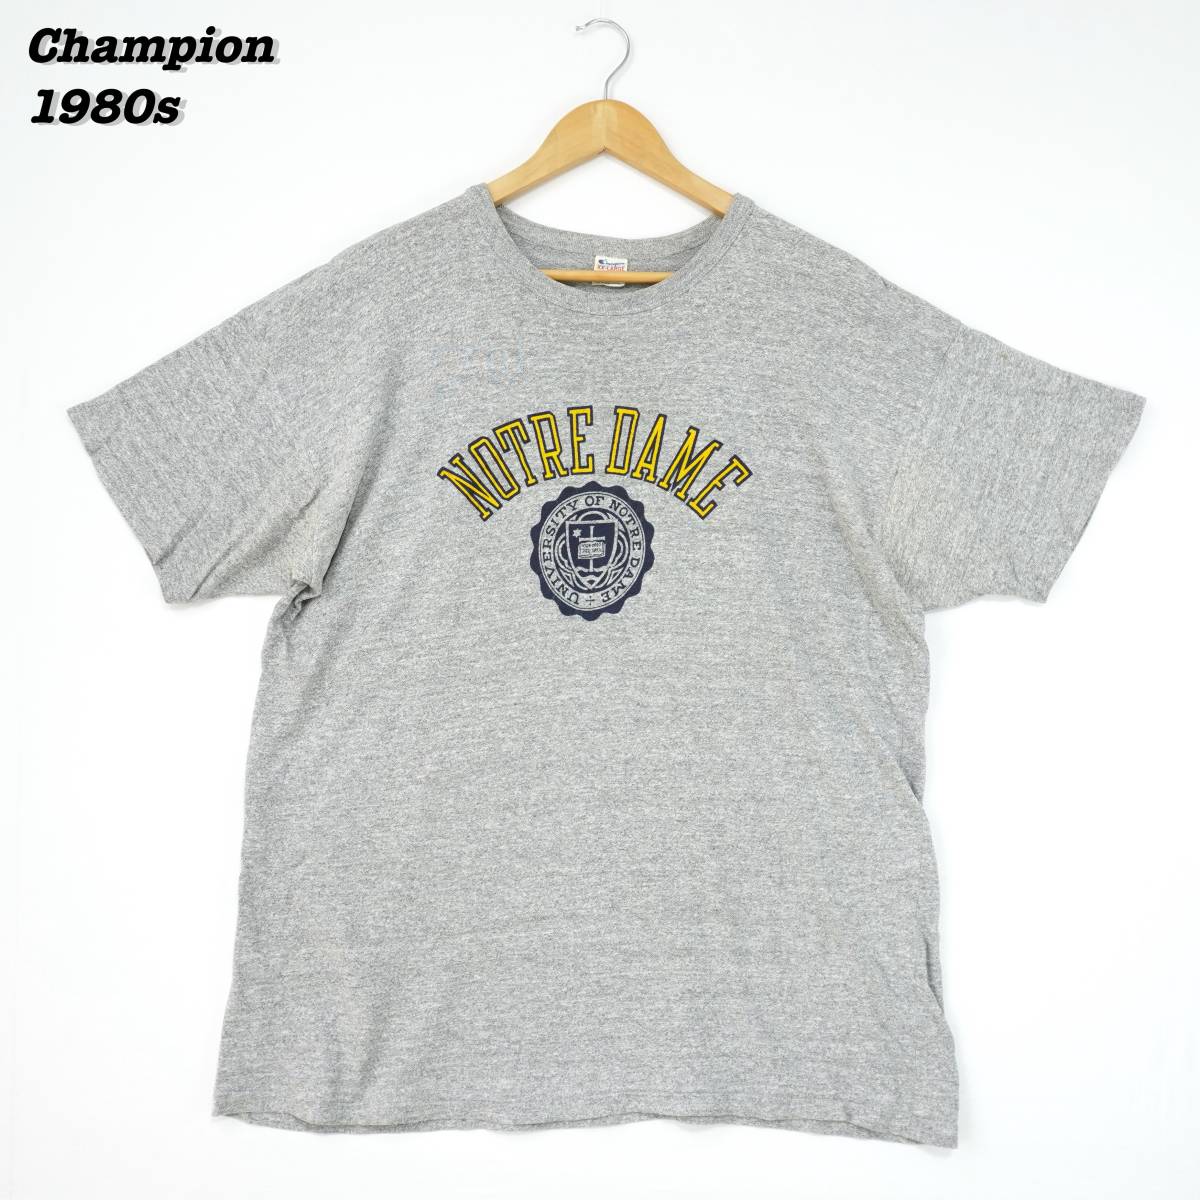 Champion T-Shirts 1980s XX-LARGE T206 Vintage チャンピオン Tシャツ 1980年代 トリコロールタグ ヴィンテージ